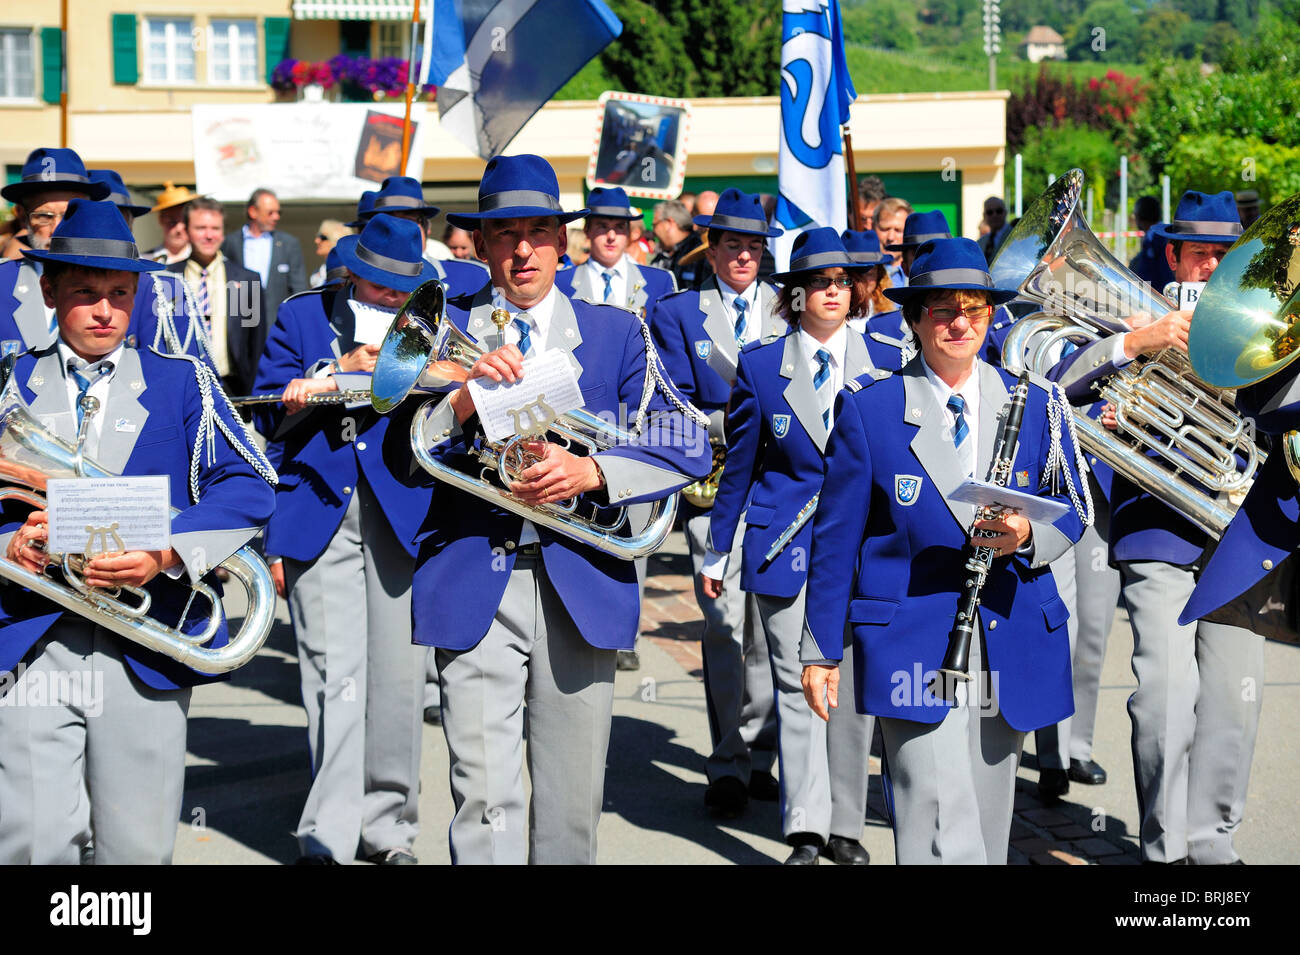 Le brass band de Brienz marche dans le Swiss village viticole de Fechy lors d'un festival du vin Banque D'Images